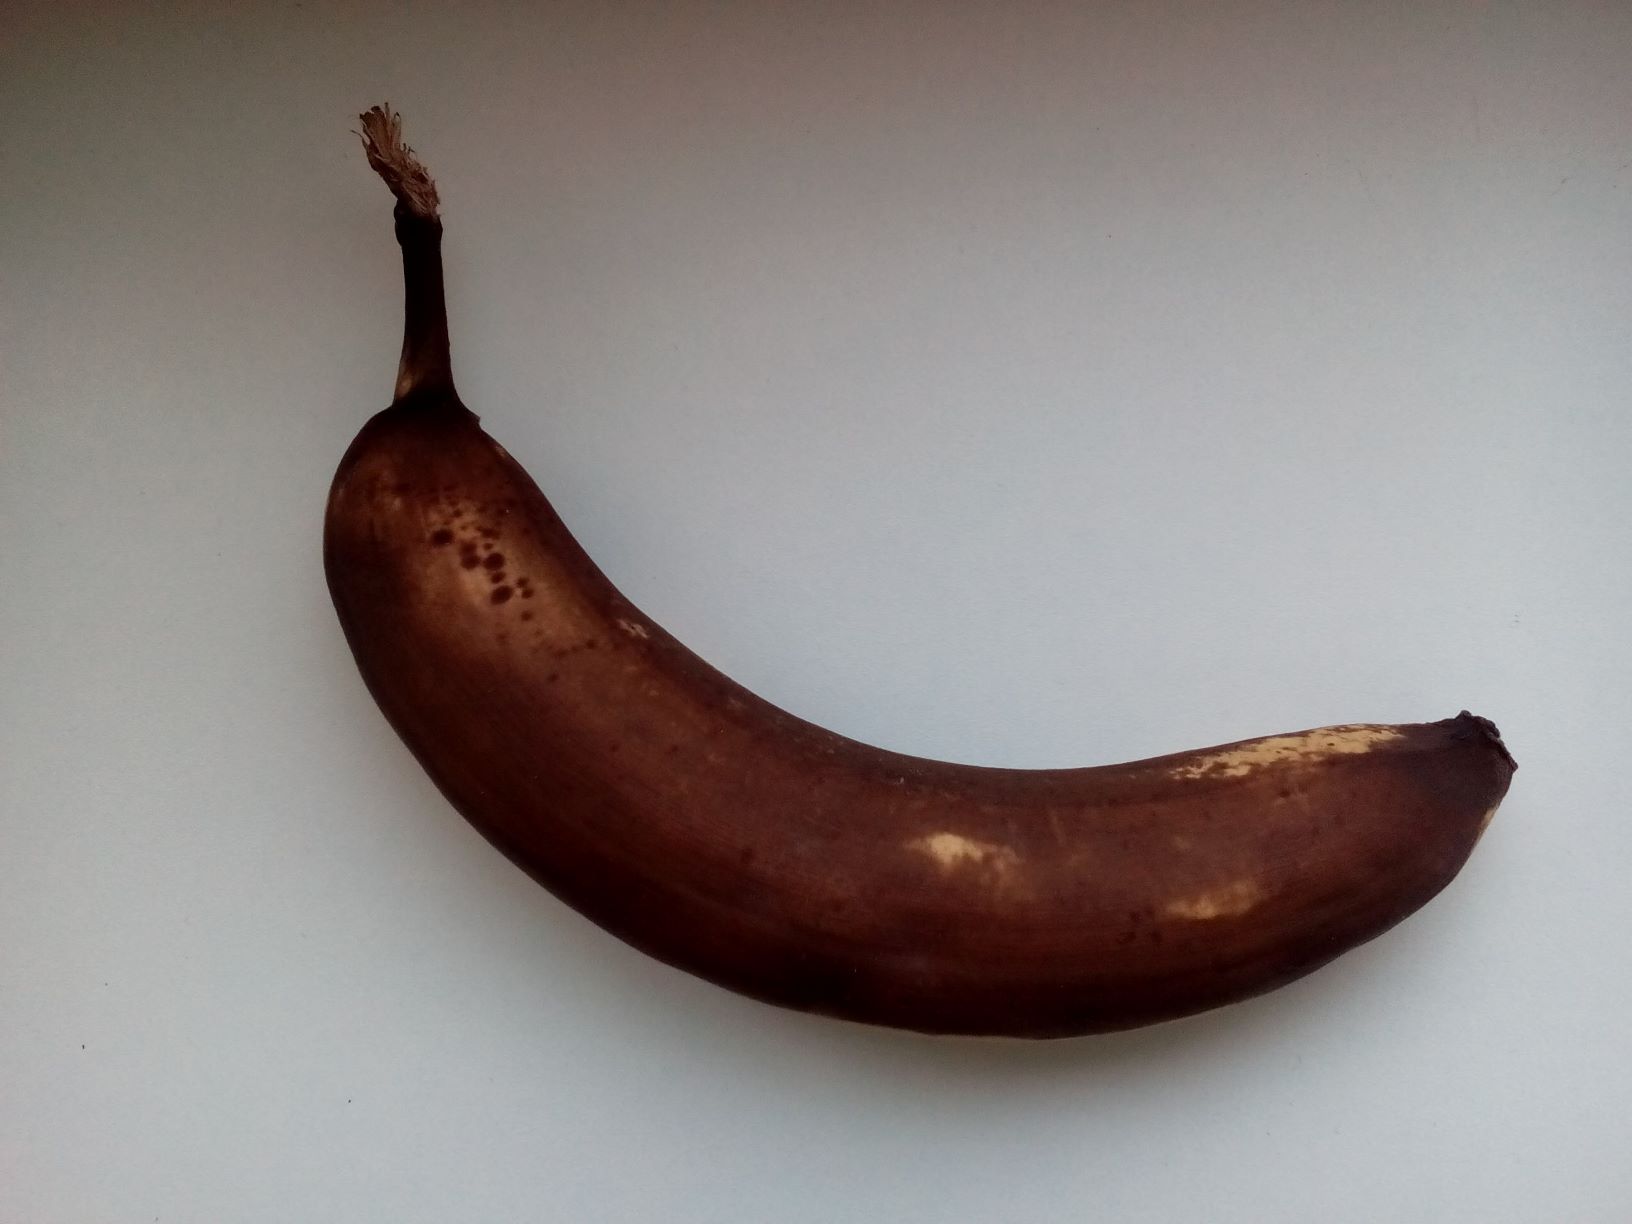 zralý banán